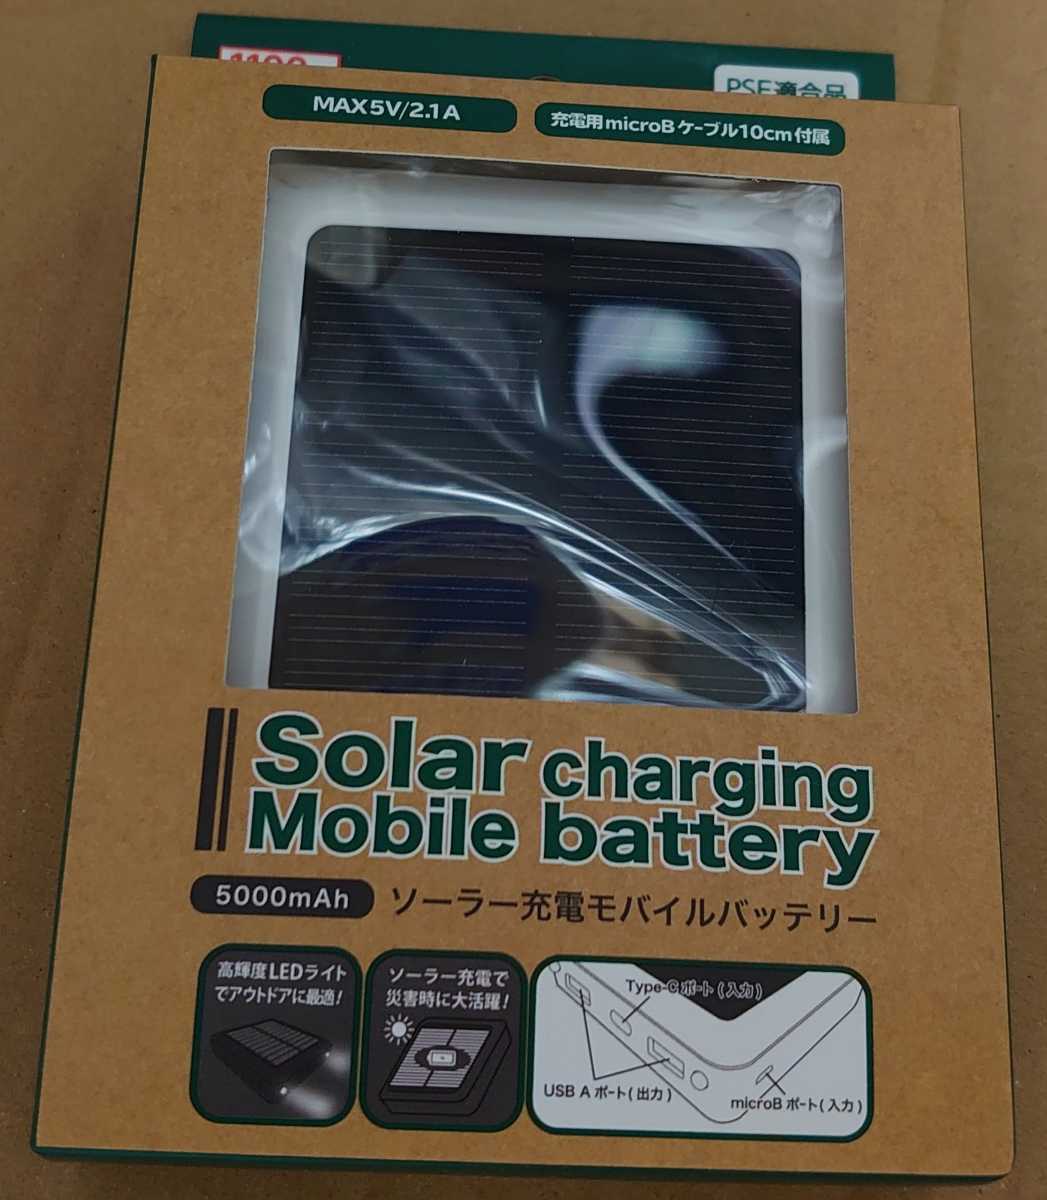 ダイソー ソーラー充電モバイルバッテリー Daiso Solar charging Mobile battery 高輝度LEDライト_画像2